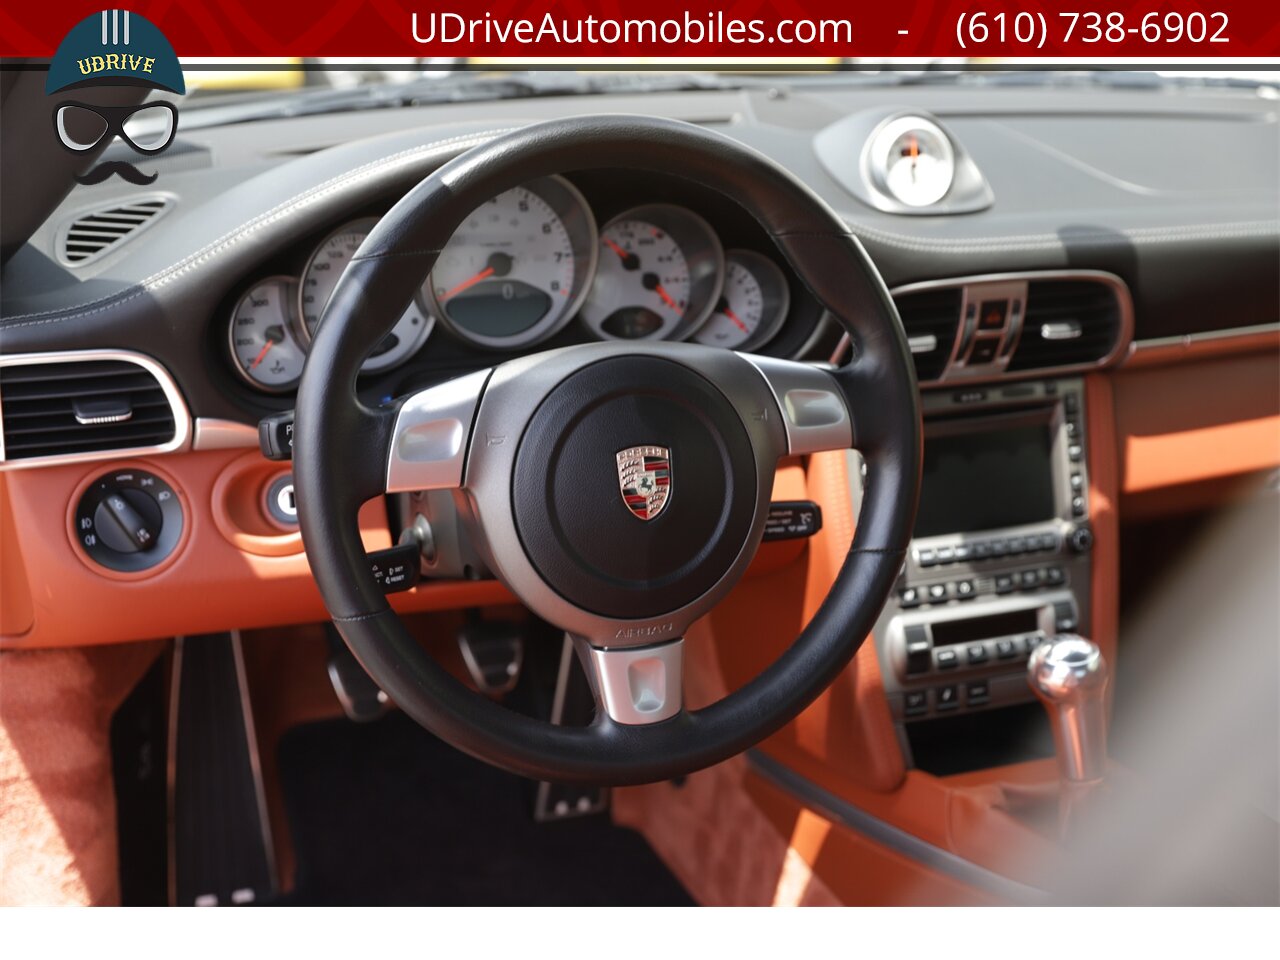 2007 Porsche 911 997S 6Sp Chrono Sprt Seats Sprt Shift Sprt Exhaust  Terracotta Full Lthr 25k Miles $100K MSRP - Photo 29 - West Chester, PA 19382